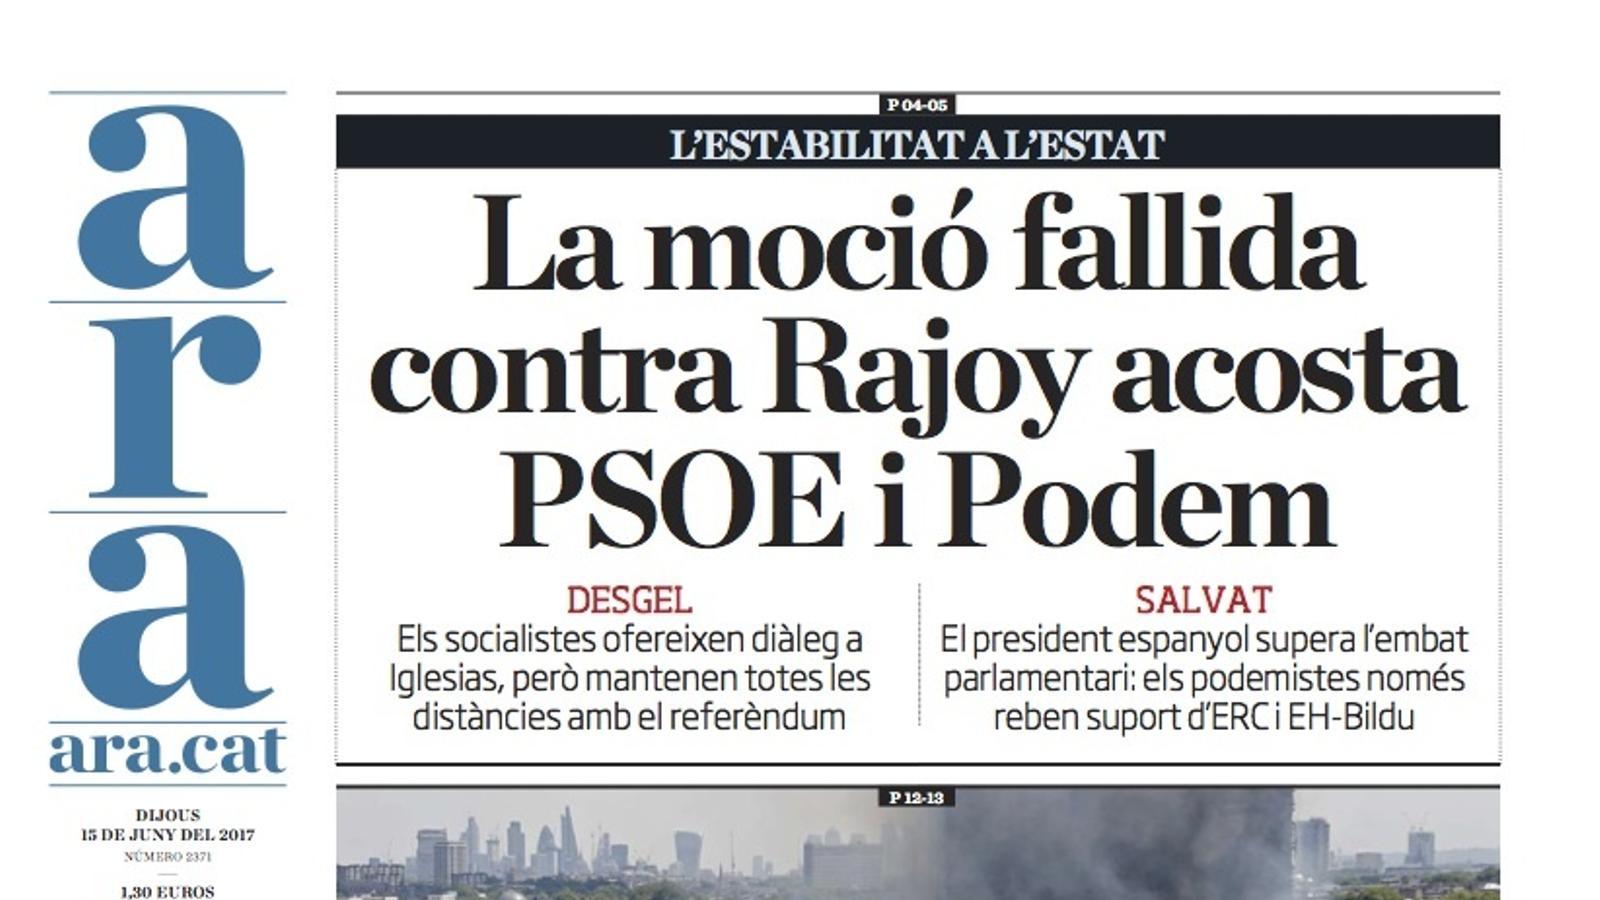 "La moció fallida contra Rajoy acosta PSOE i Podem", portada de l'ARA